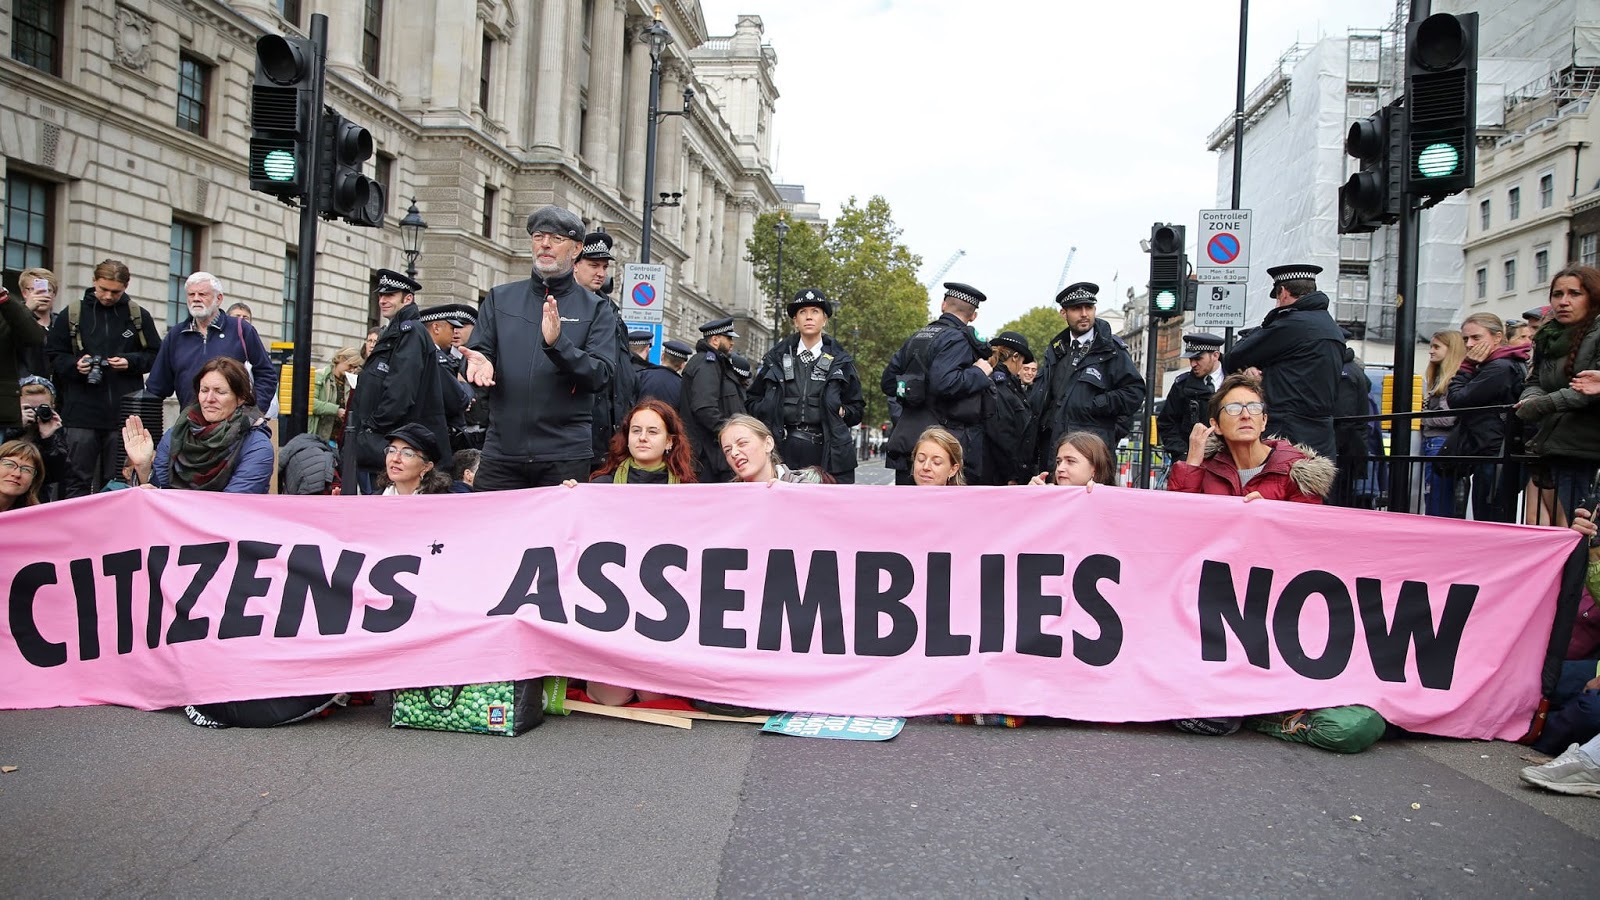 Image de manifestants bloquant une rue avec une grande banderole portantles mots "citizens' assembliesnow".